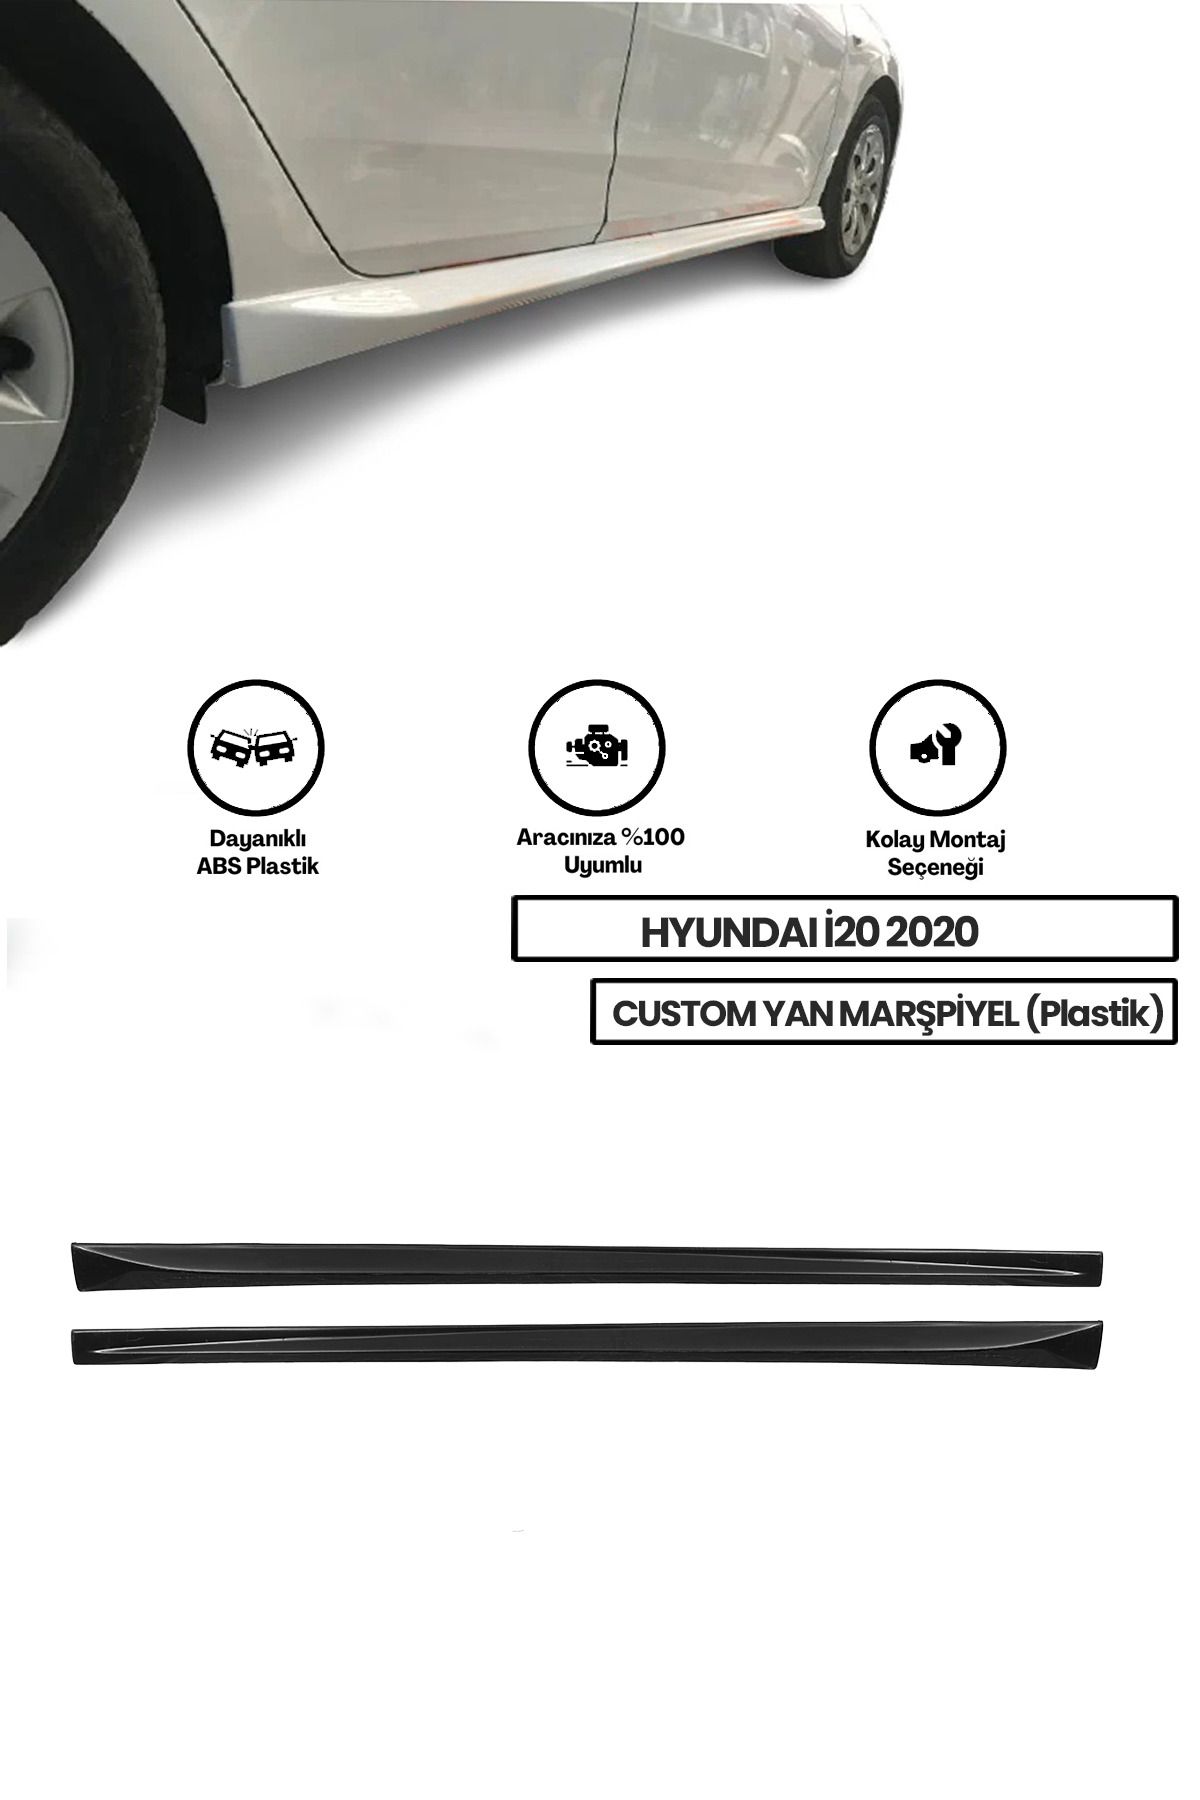 GÜNEŞLİ GARAJ Hyundai I20 2020 Yan Marşpiyel (ÇİFT) (PLASTİK)